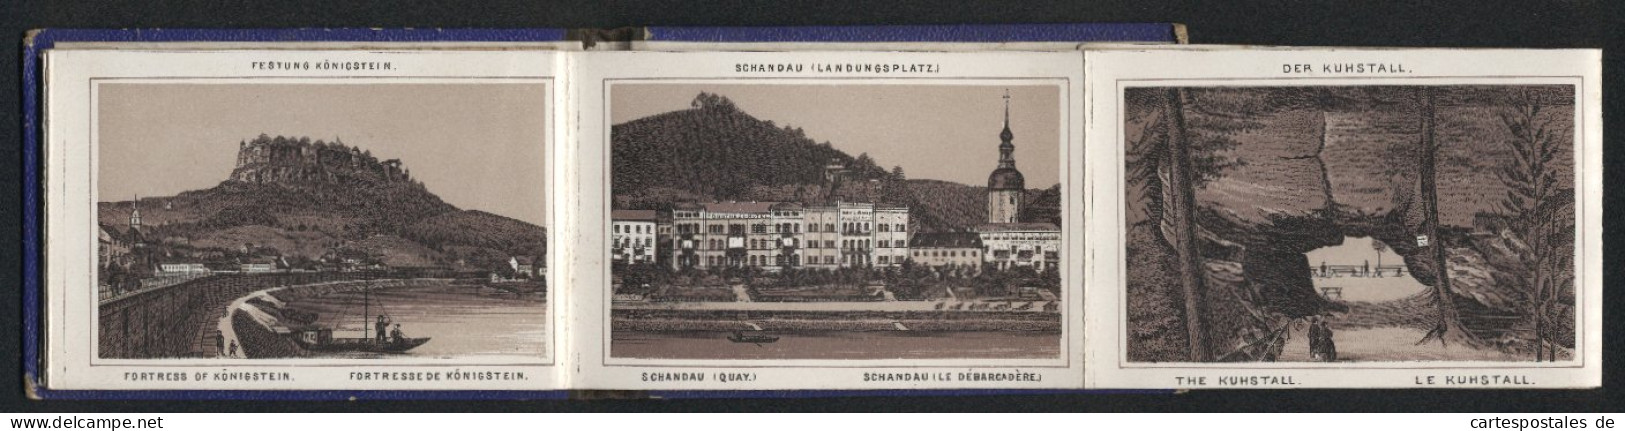 Leporello-Album Sächs. Schweiz Mit 14 Lithographie-Ansichten, Gasthaus Grosser Winterberg, Schandau, Bastei, Amselfall  - Litografía